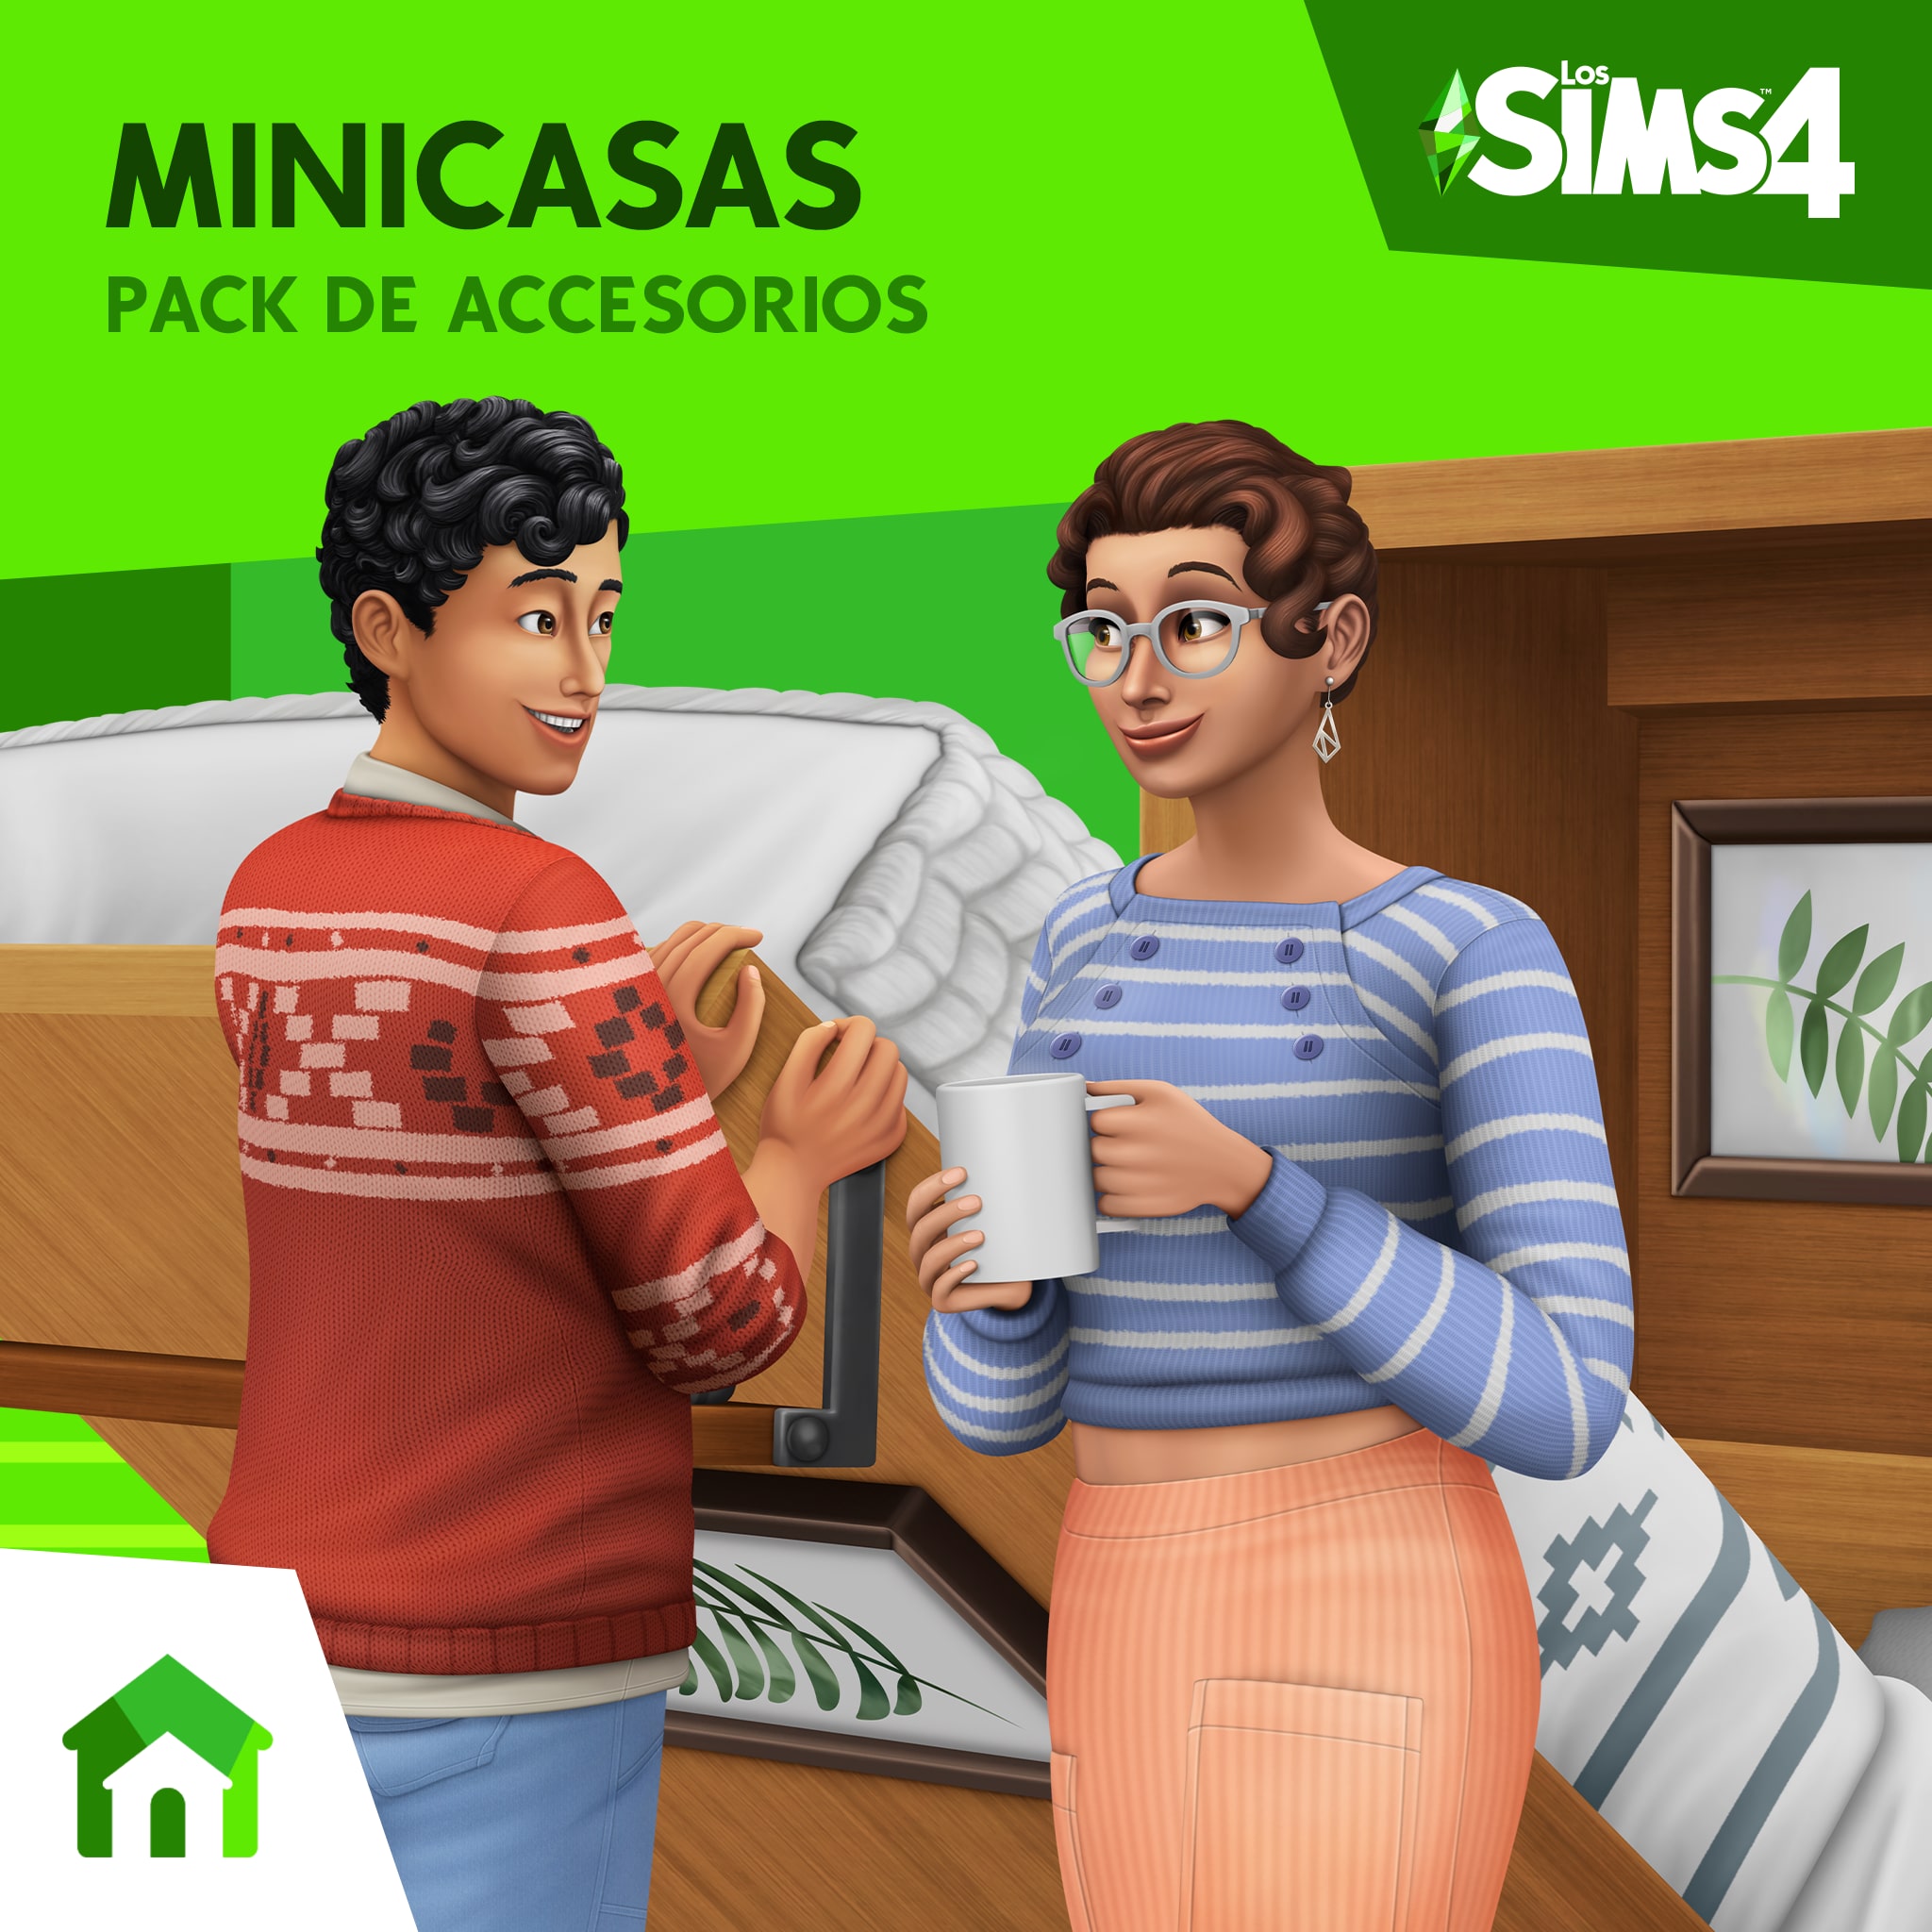 Los Sims™ 4 Minicasas Pack de Accesorios